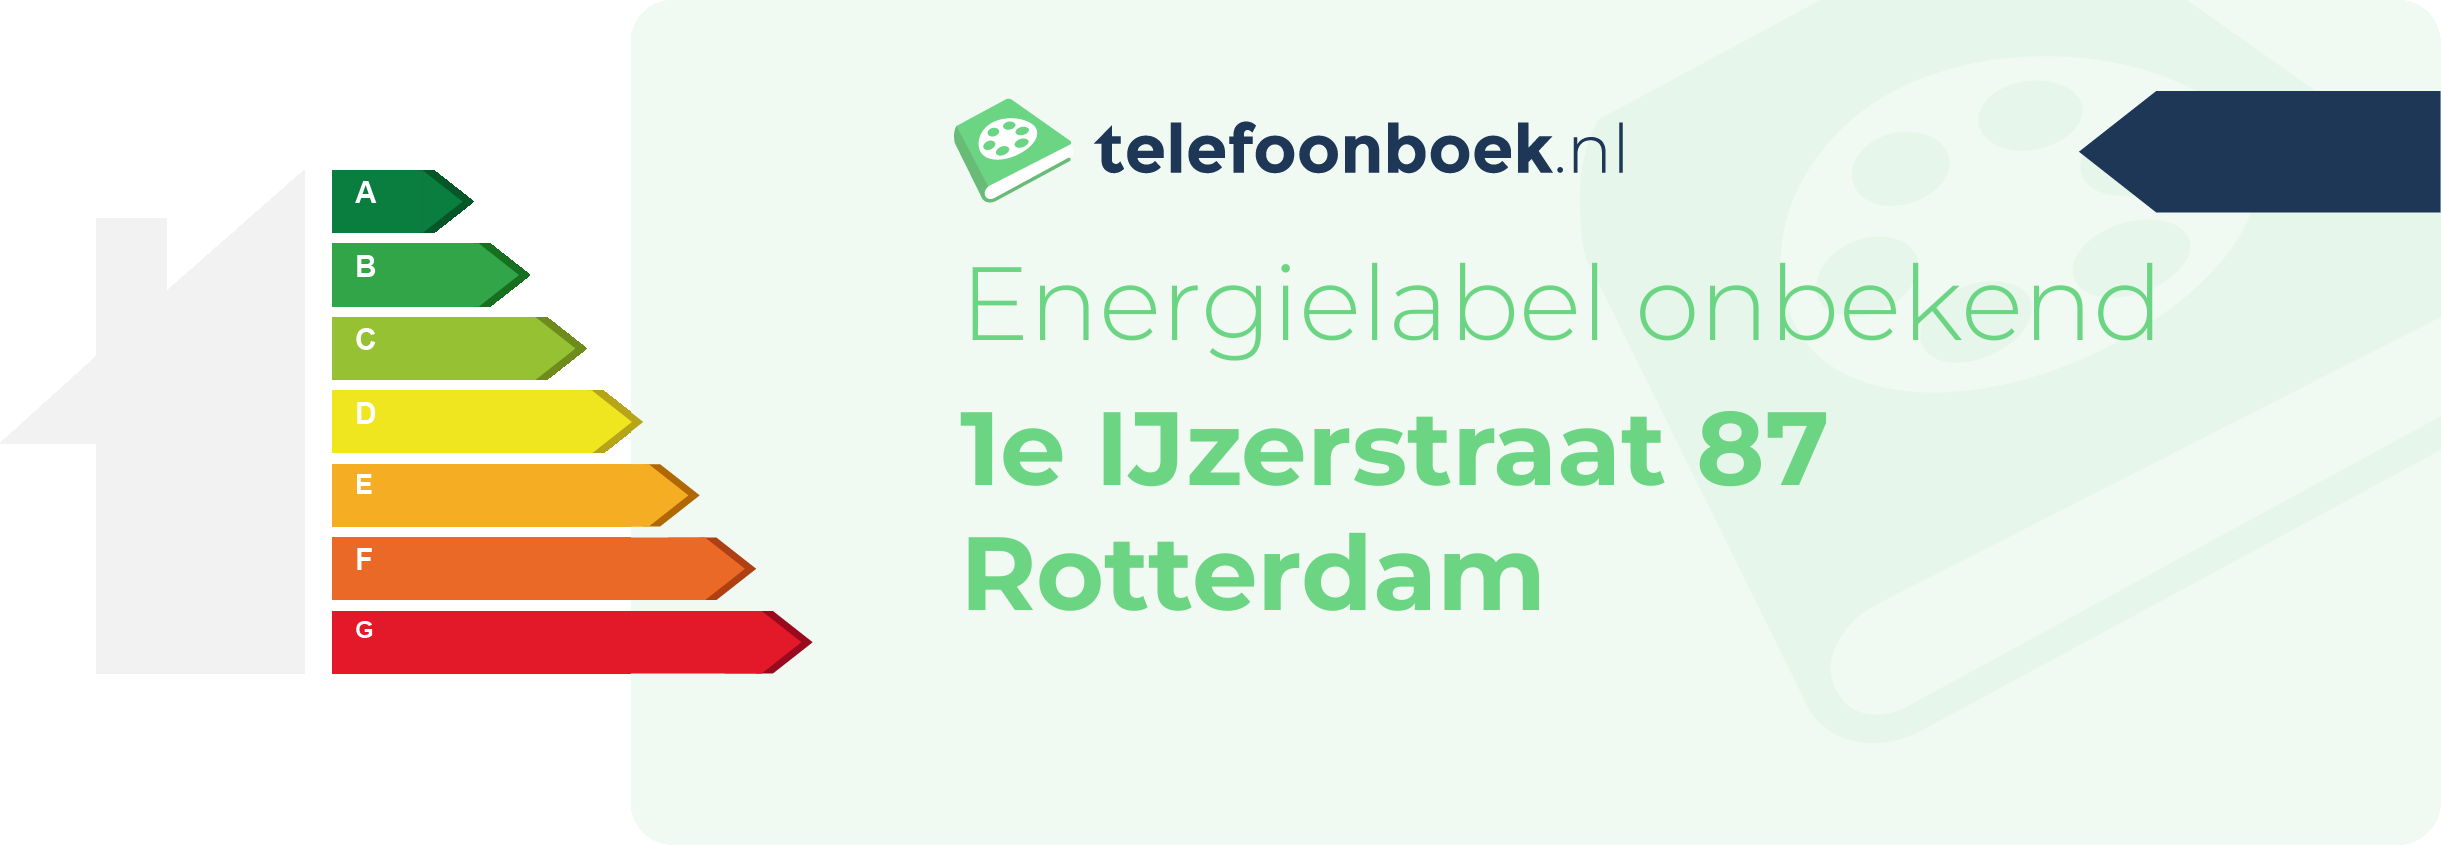 Energielabel 1e IJzerstraat 87 Rotterdam